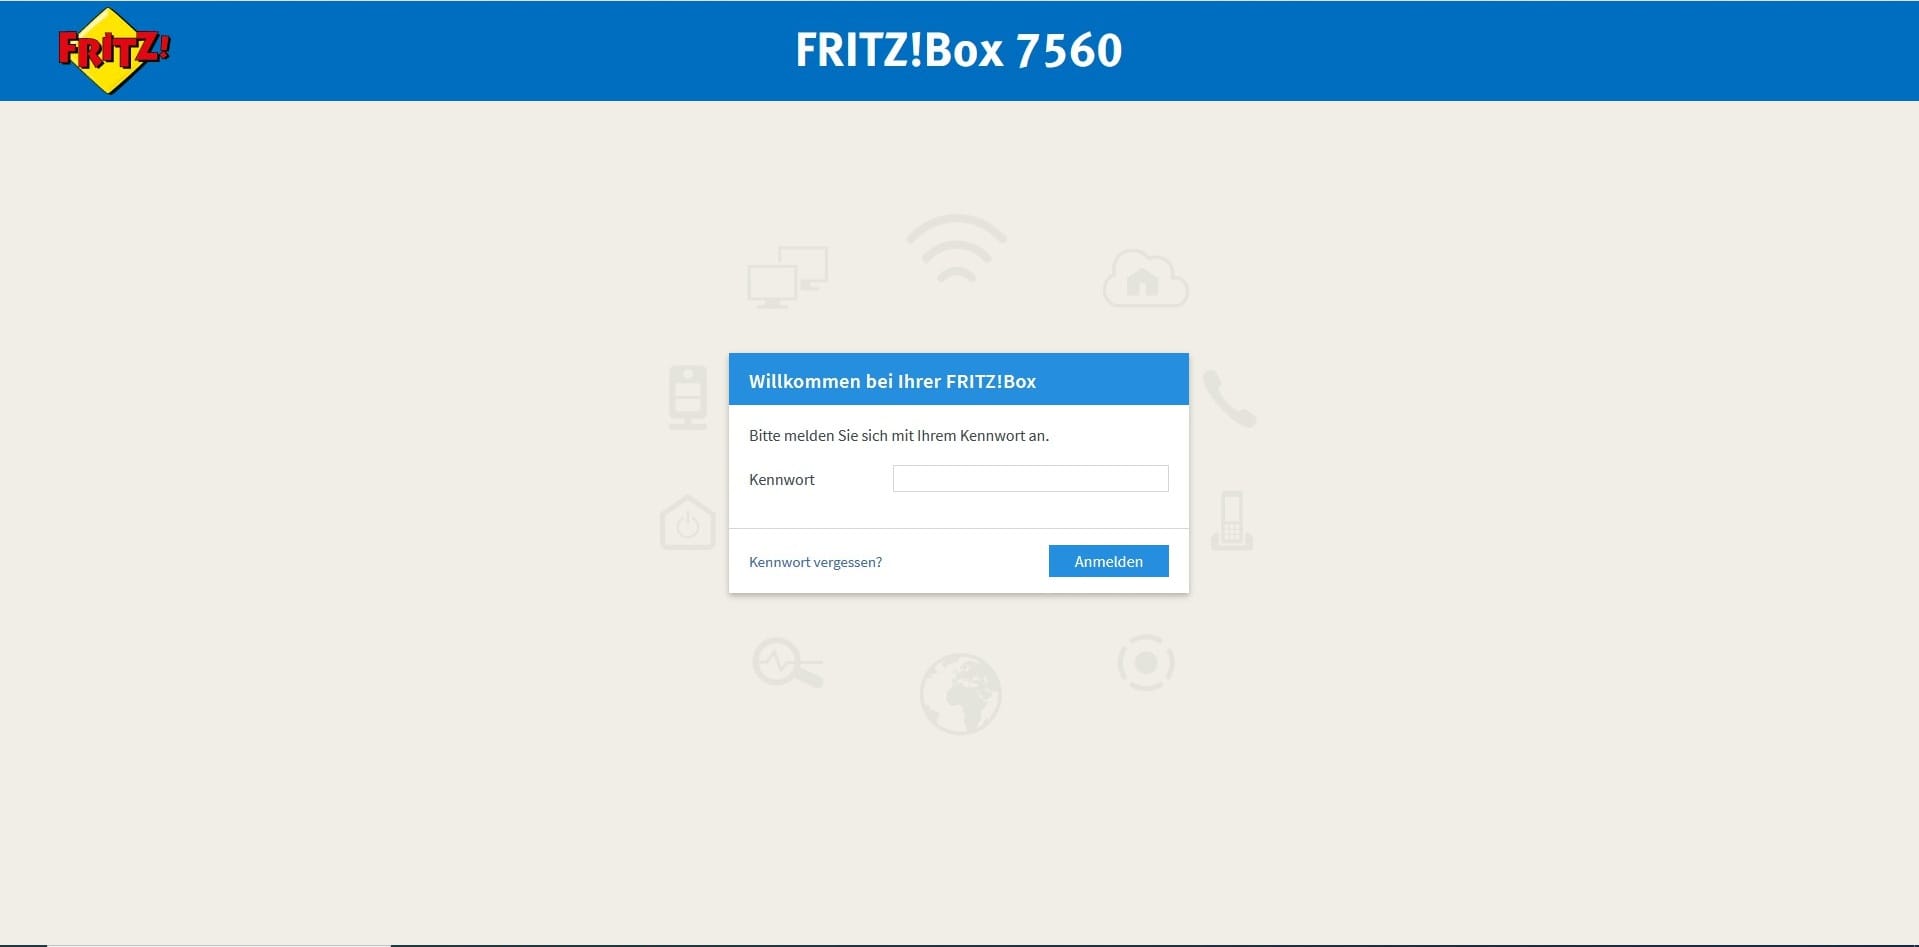 WLAN-Probleme bei einer Fritzbox beheben